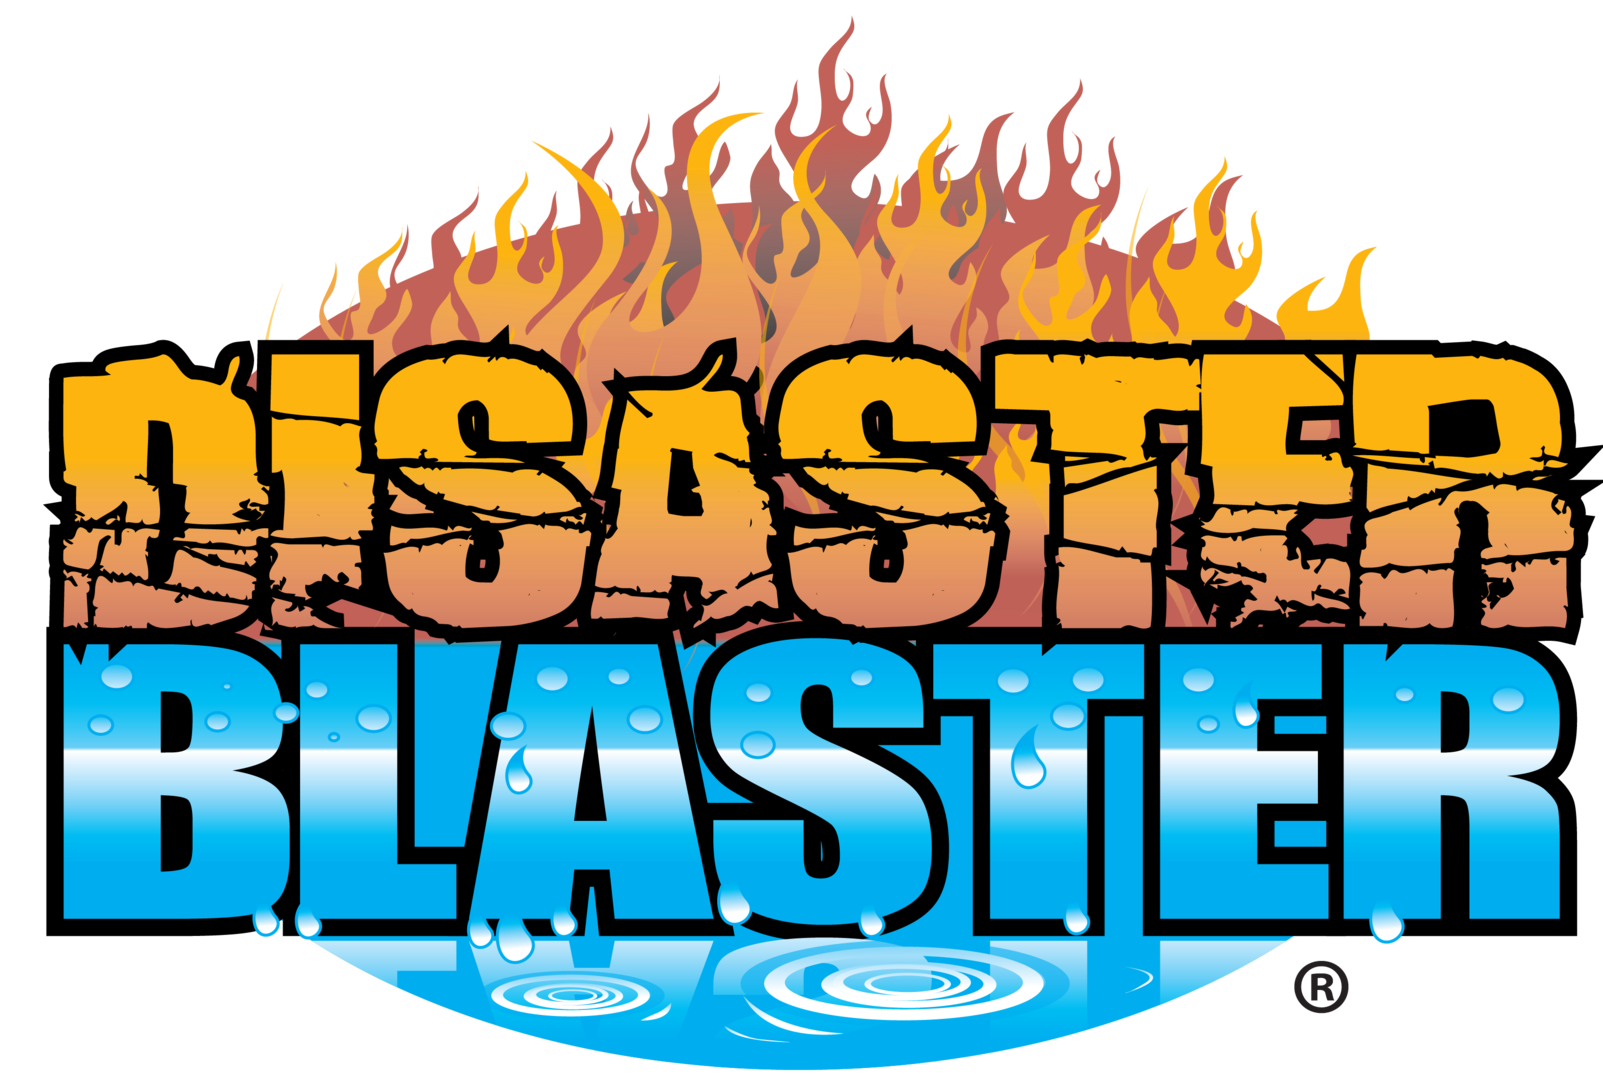 disaster blaster logo